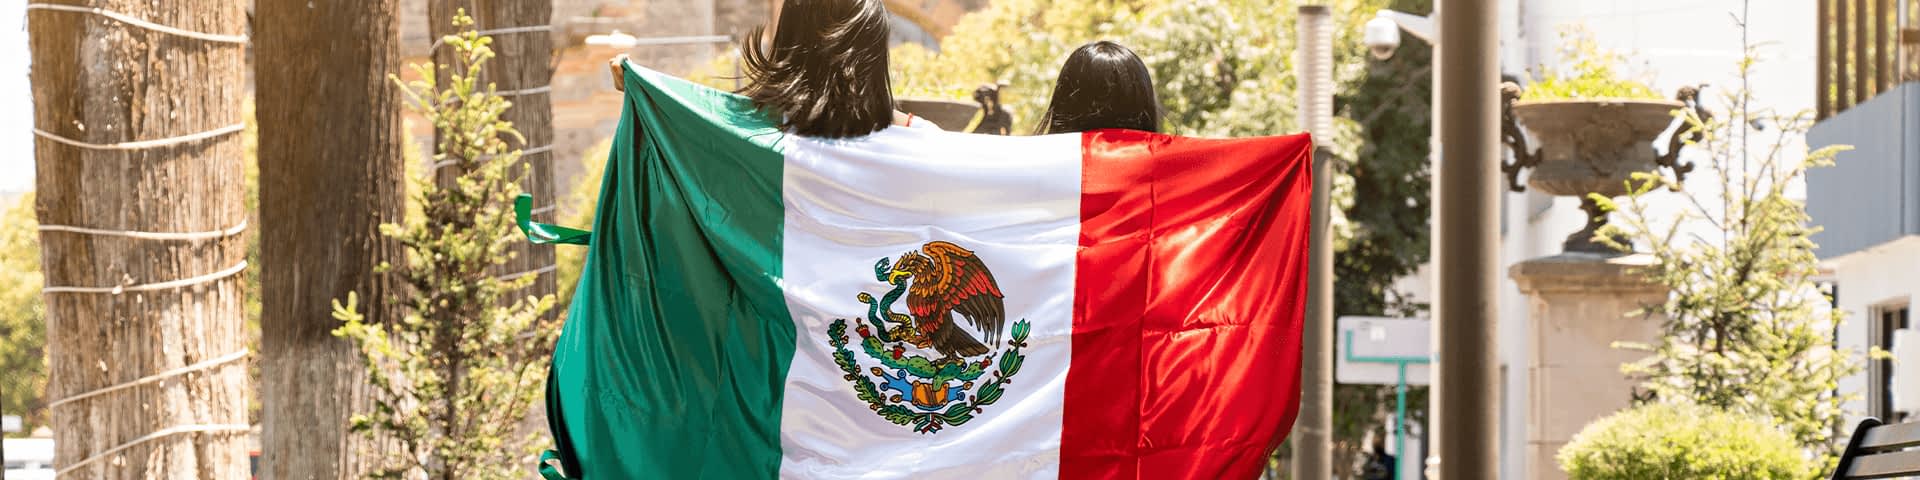 Adipa Se Internacionaliza A México Adipa México 7742